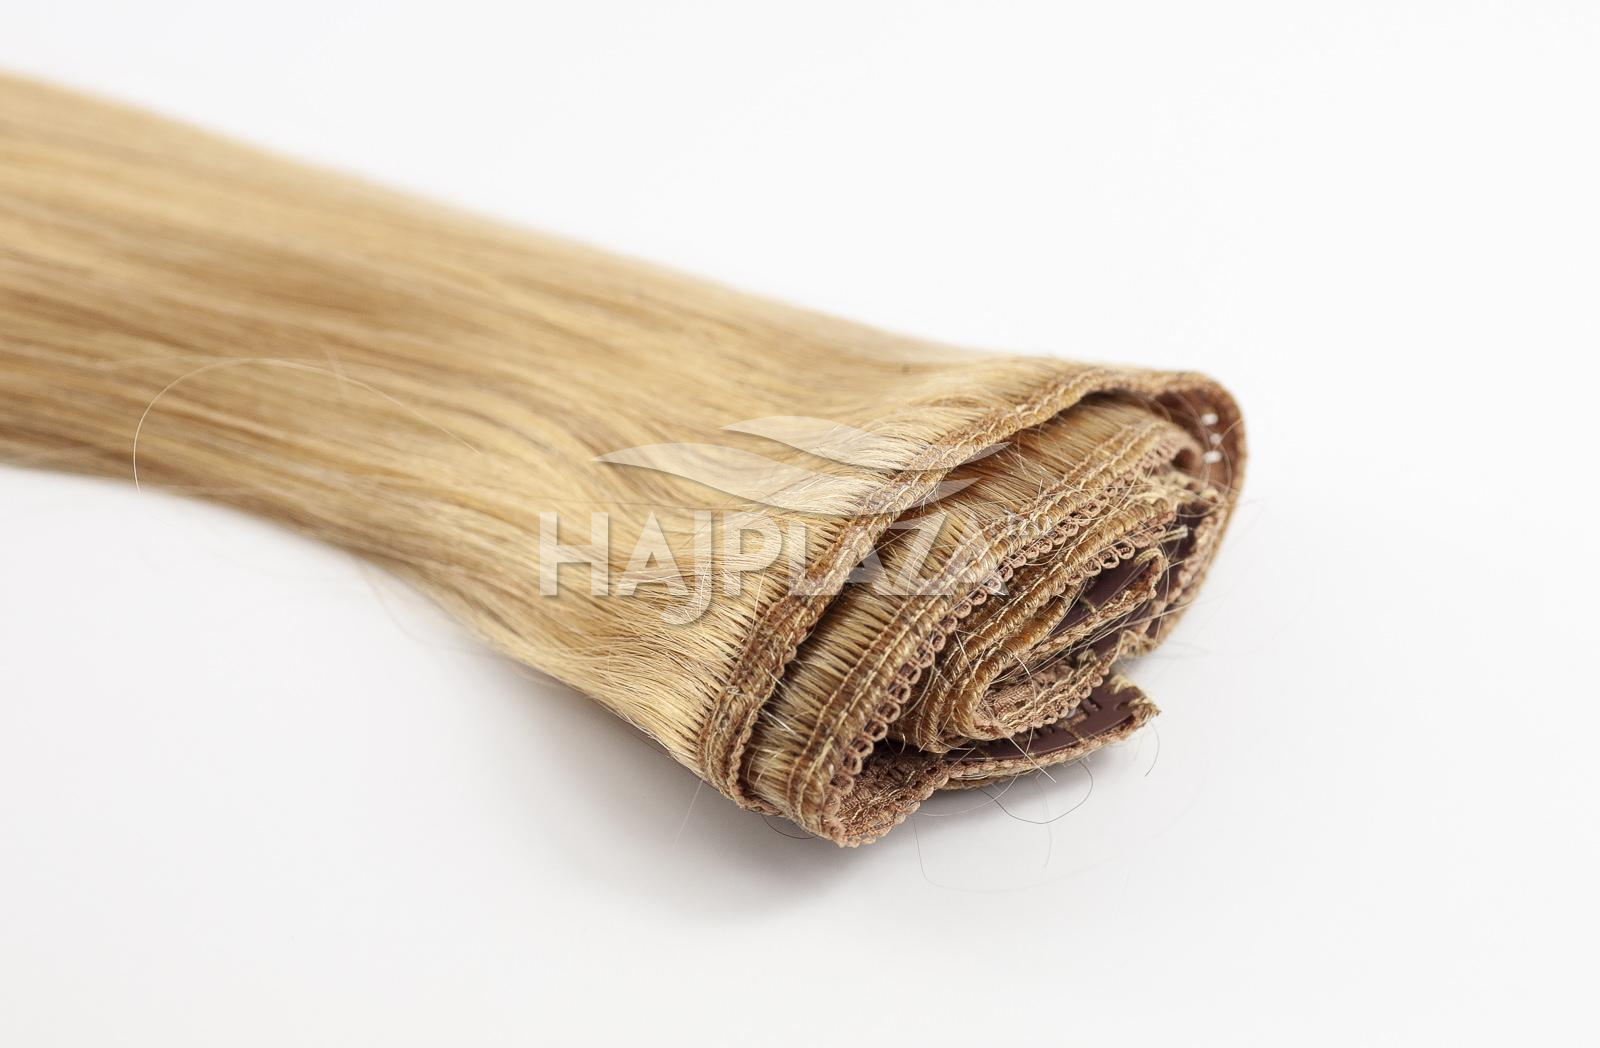  Festett középszőke  csatos haj - 35-40 cm